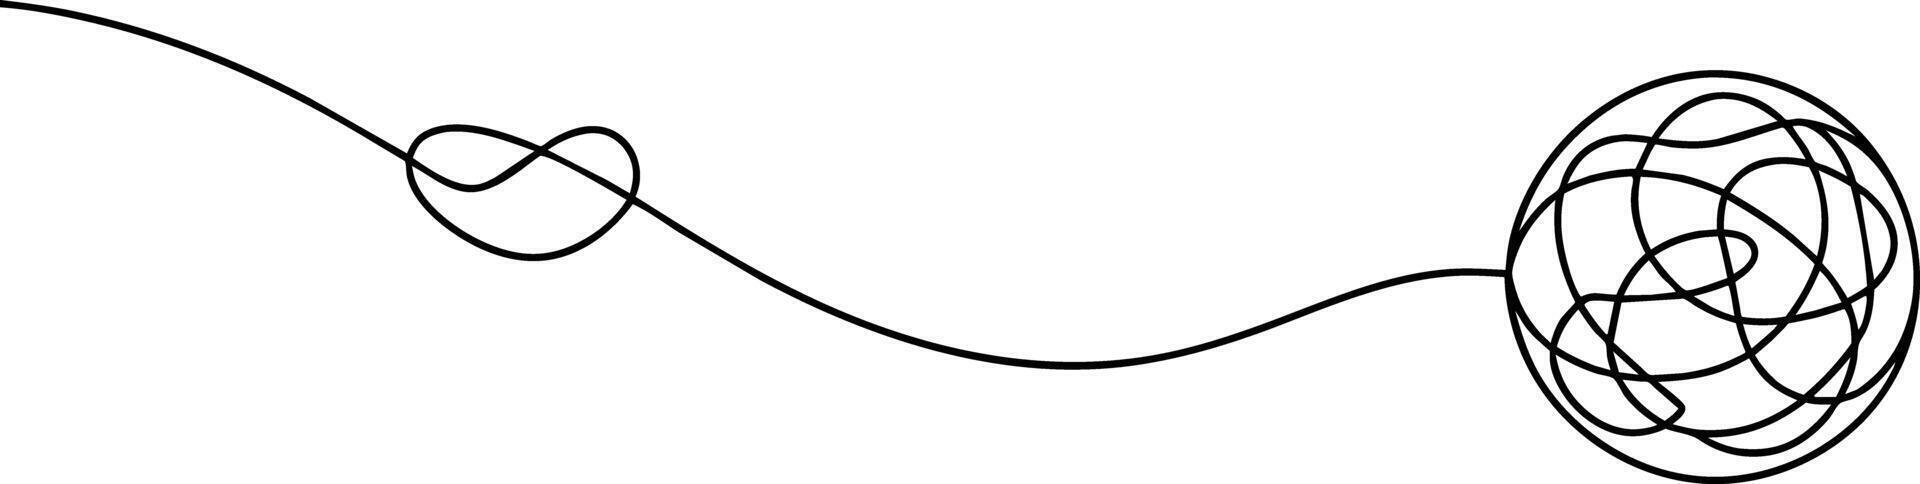 un negro y blanco dibujo de un espiral vector